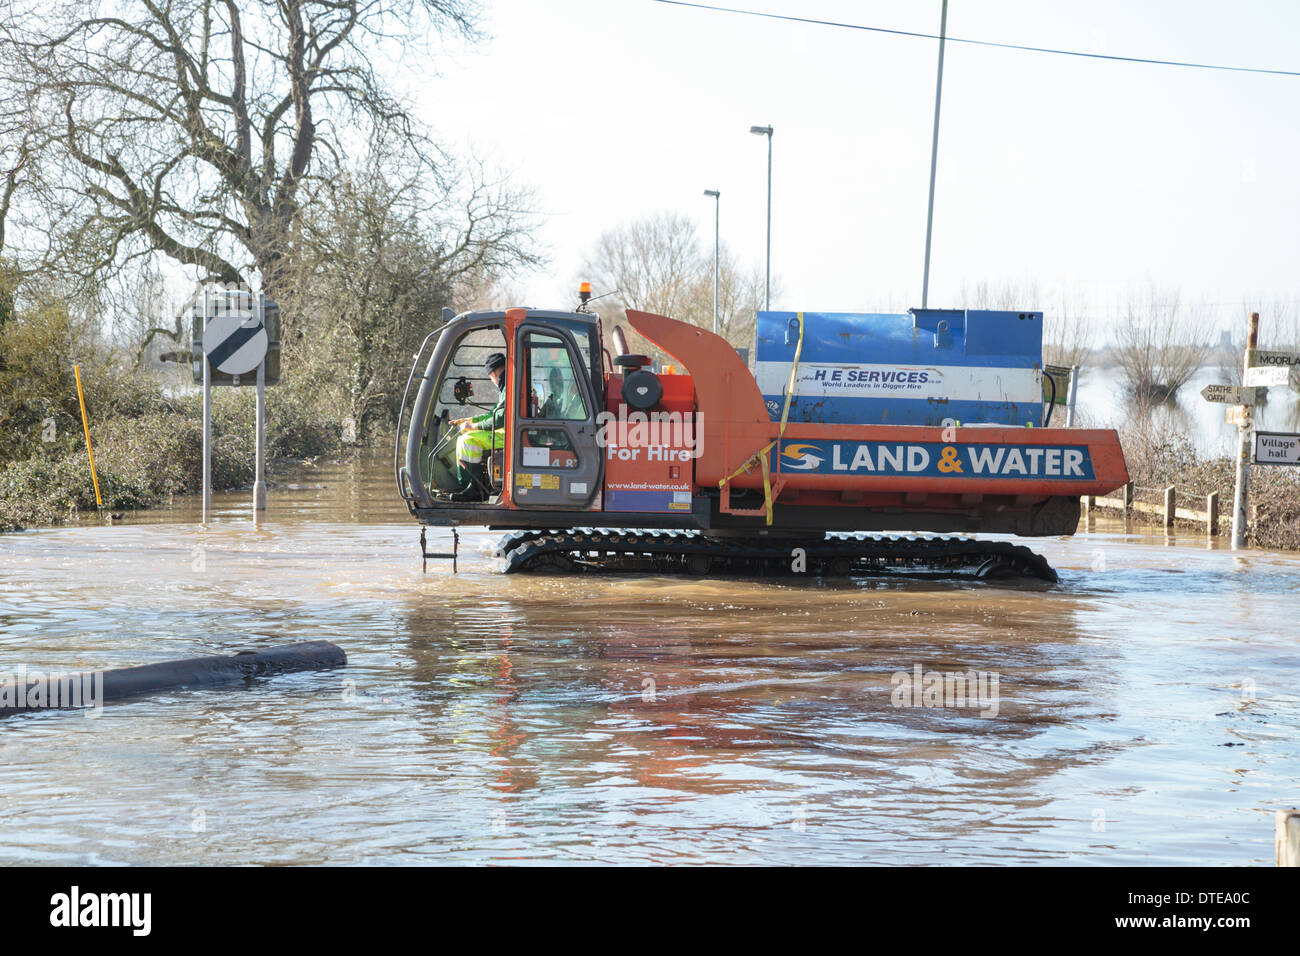 Burrowbridge, Reino Unido. 16 Feb, 2014. Los trabajadores hacen uso de vehículos especializados durante las fuertes inundaciones en los niveles Burrowbridge en Somerset, el 16 de febrero de 2014. Vehículos aptos para el uso en aguas profundas están siendo usados para eliminar obstáculos tales como los troncos de los árboles y postes de telégrafo con el agua para que la ayuda pueda ser distribuido a los residentes locales. El A361 es una importante vía arterial a través de los niveles de Somerset y acaba sufrió la peor inundación en su historia y ha sido ahora submarina durante siete semanas. Crédito: Nick Cable/Alamy Live News Foto de stock